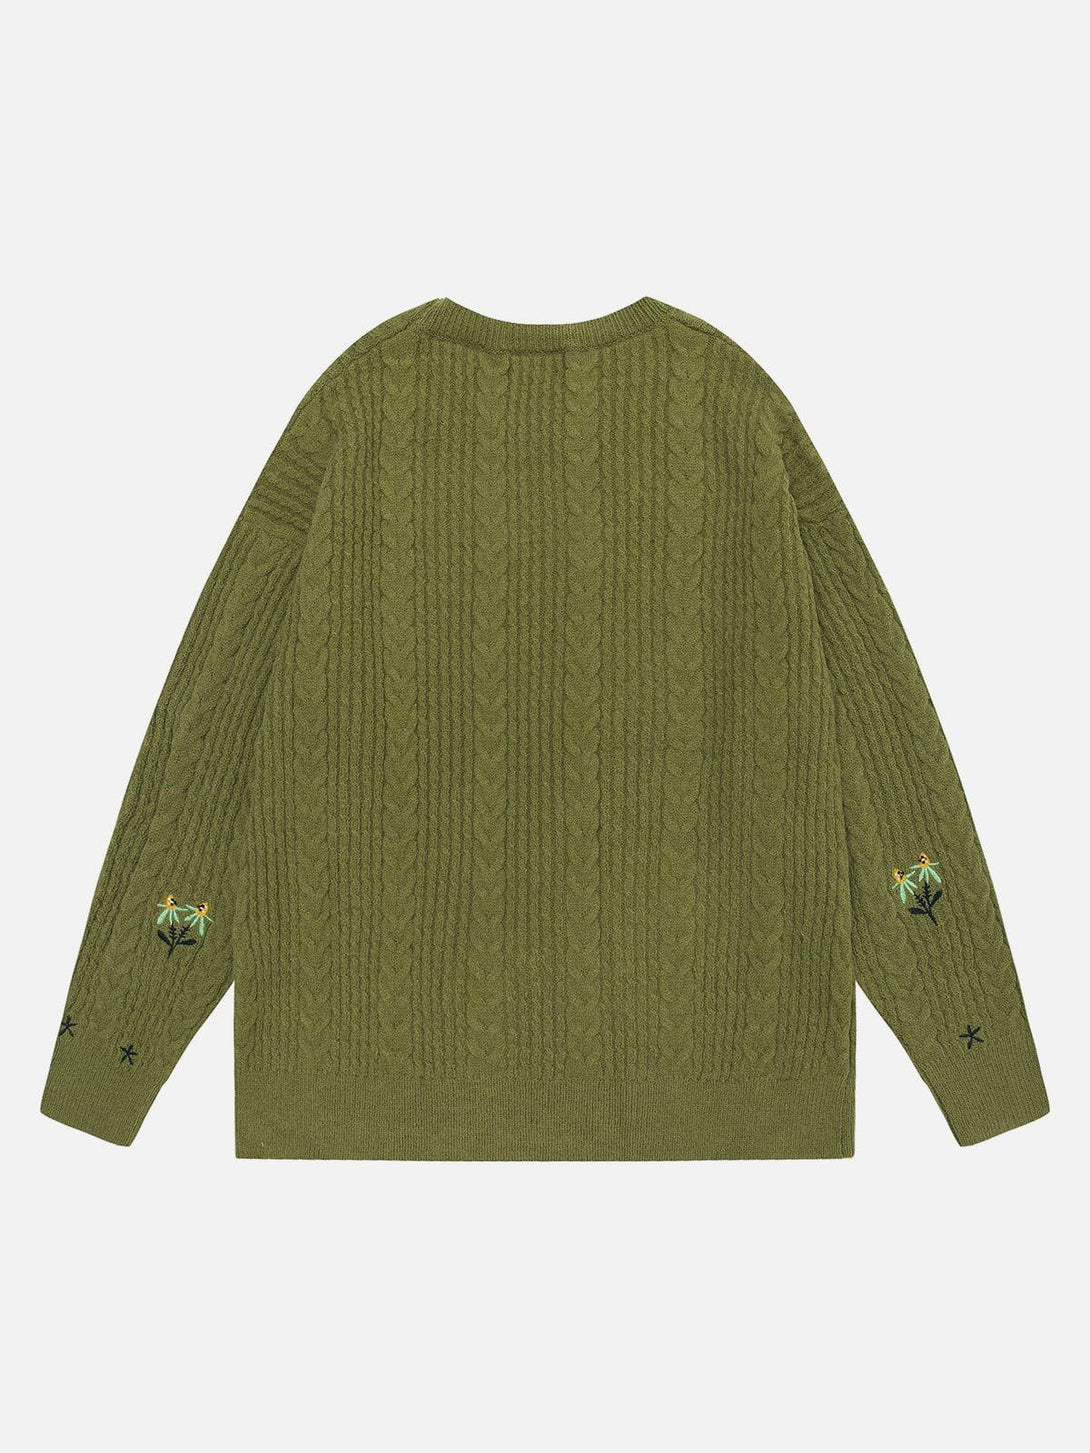 Majesda® - Vintage Twist Pattern Sweater outfit ideas streetwear fashion